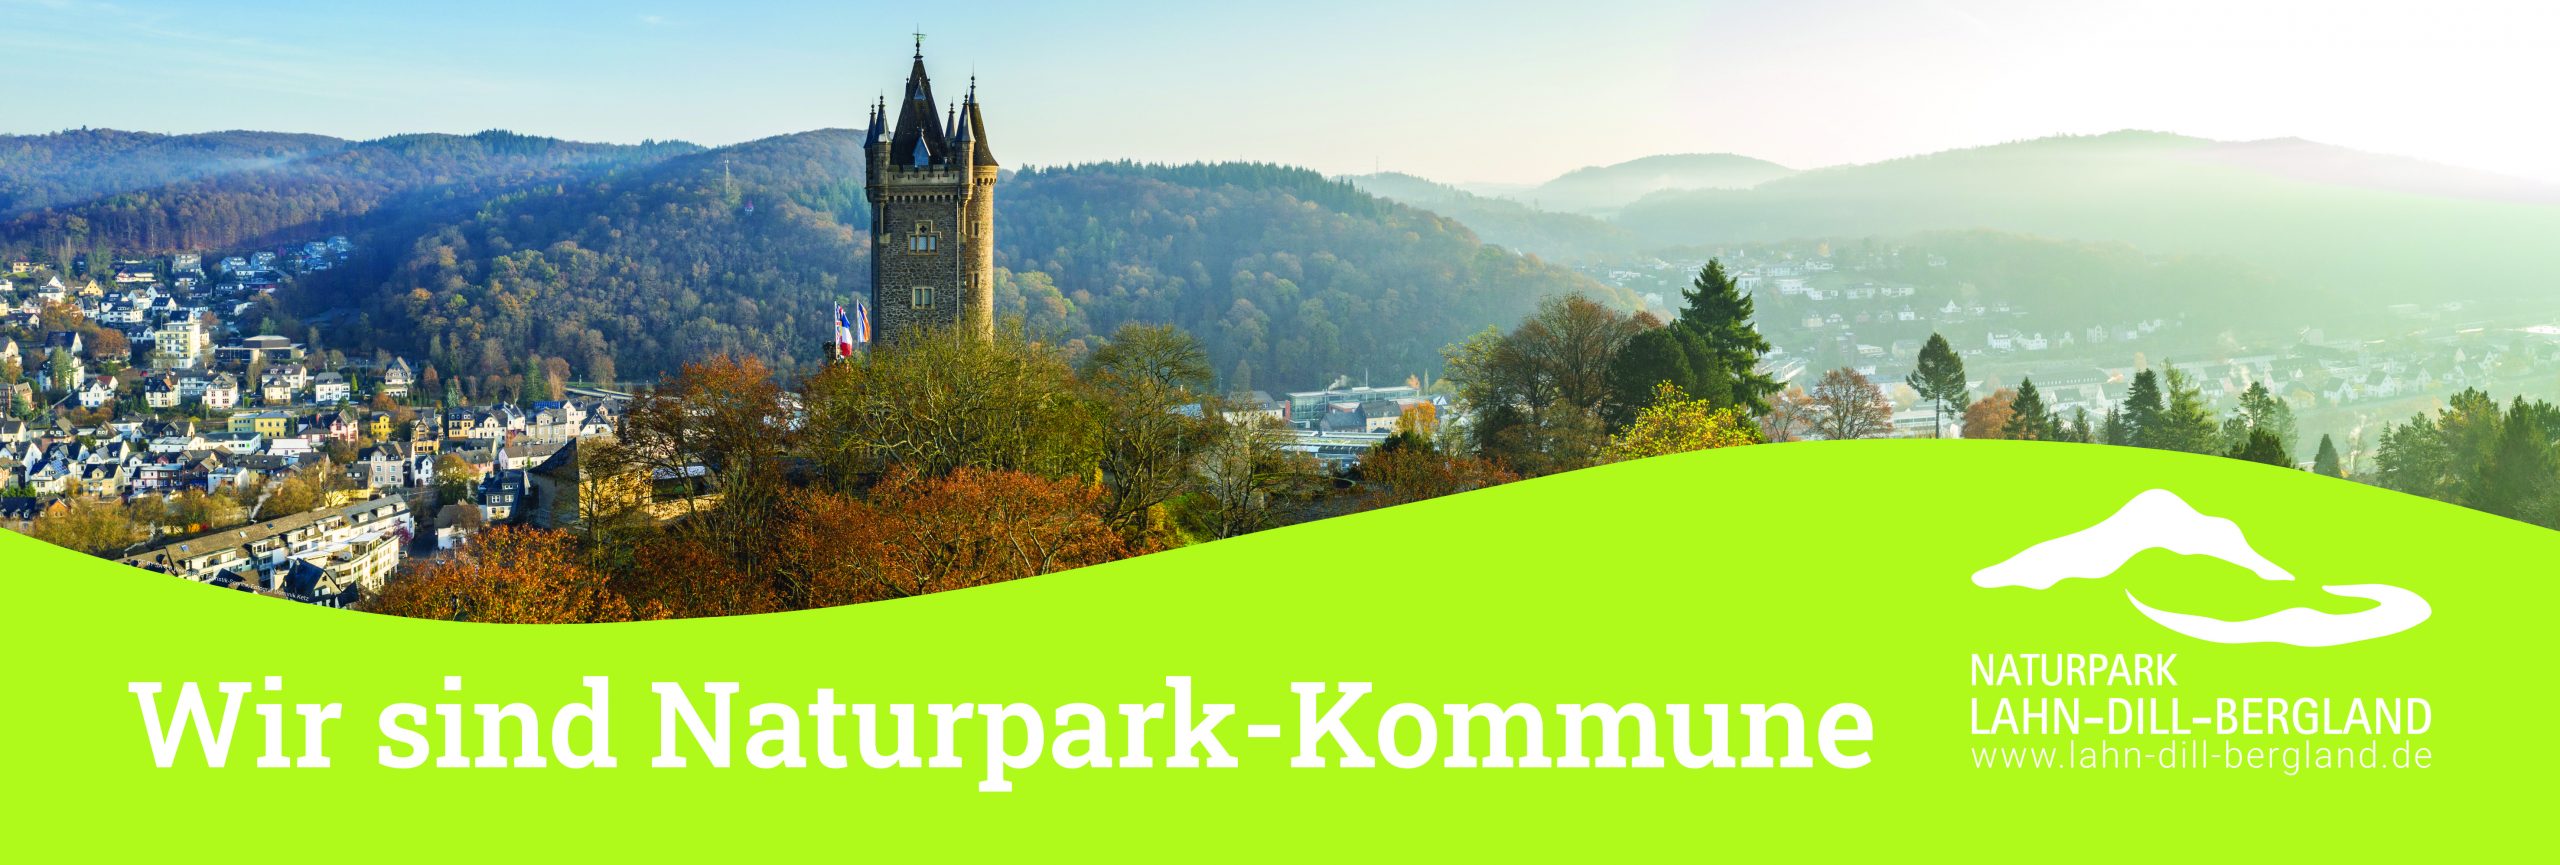 Banner "Wir sind Naturpark-Kommune". Der obere Teil des Banners zeigt eine Stadtansicht von Dillenburg mit dem Wilhelmsturm. Der untere Teil ist ein hügelartiges grünes Feld in dem die Worte "Wir sind Naturpark-Kommune" und das Logo des Naturparks Lahn-Dill-Bergland in weiß stehen.